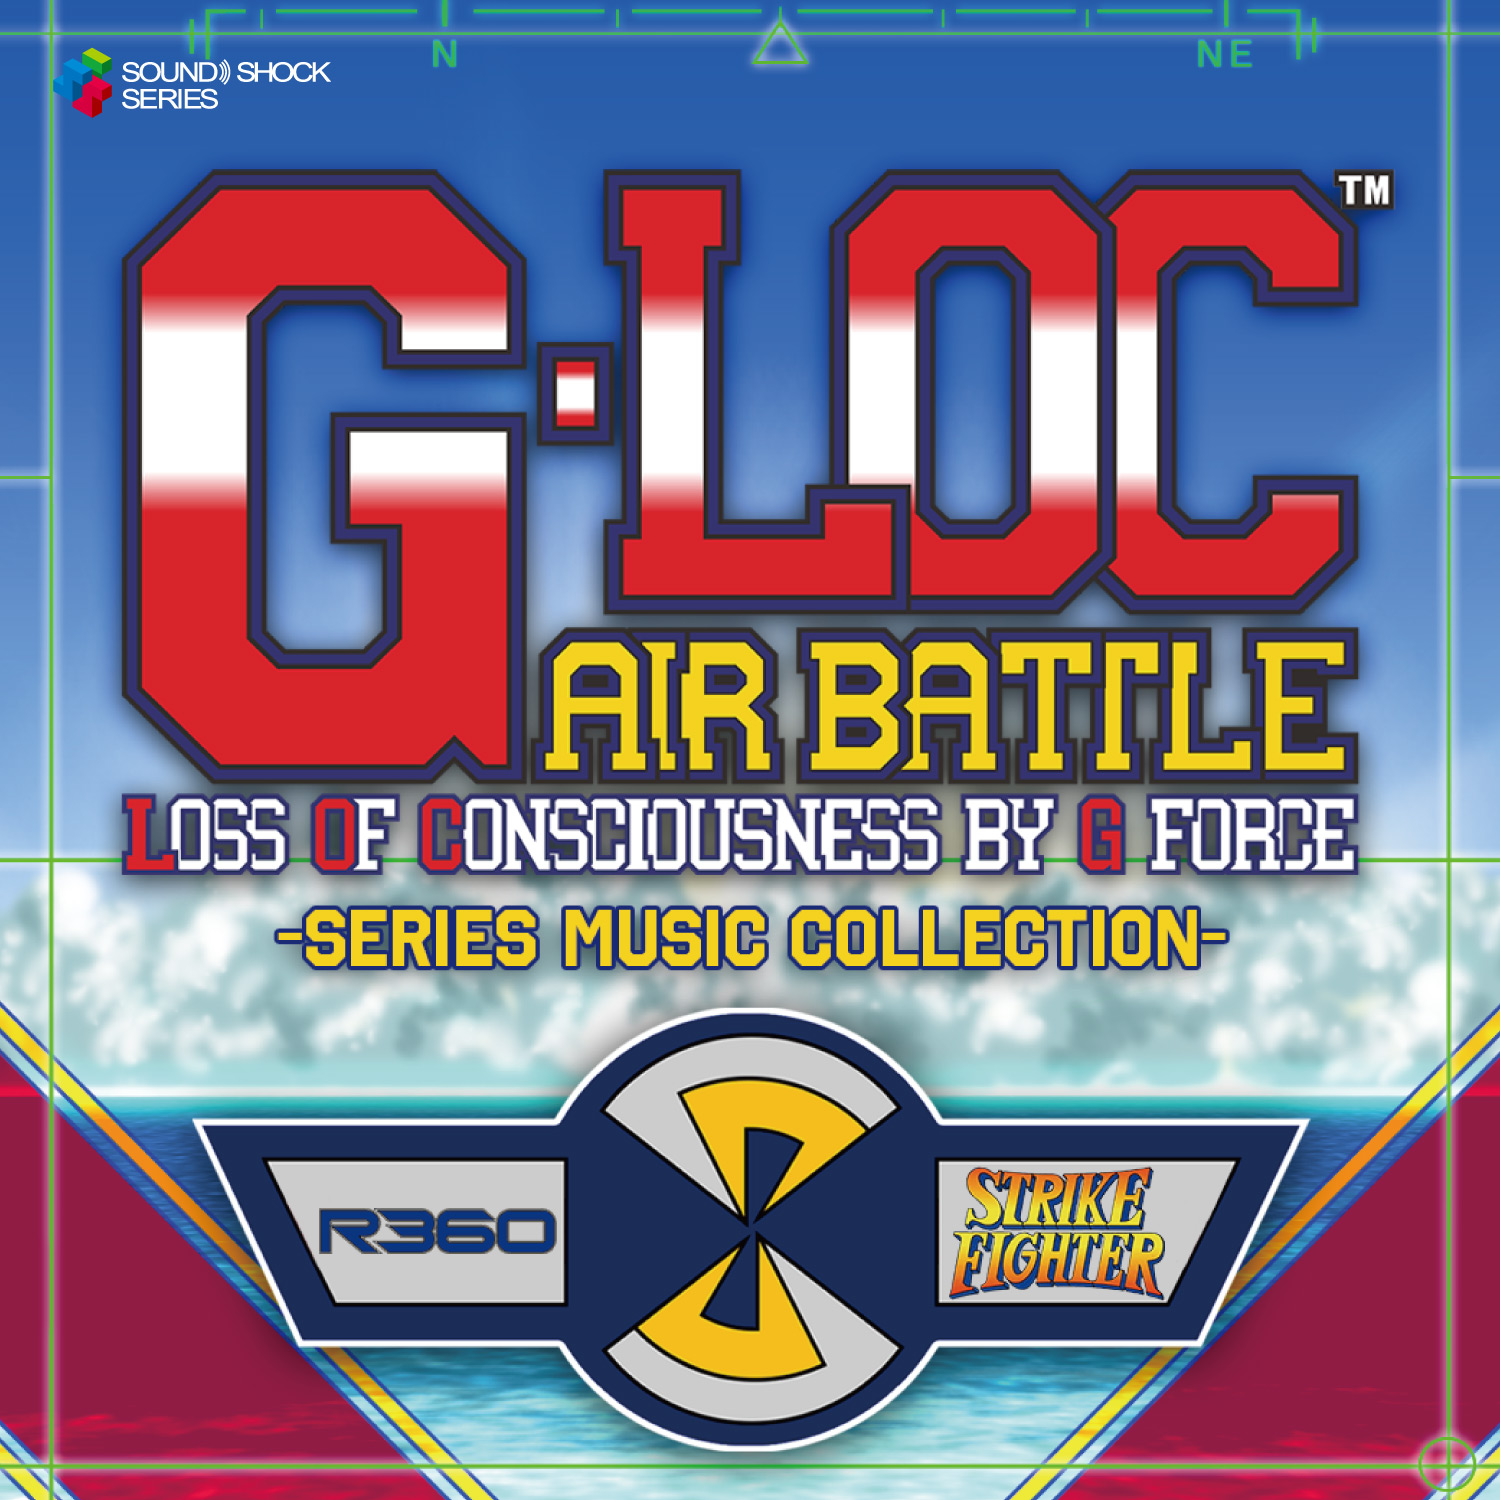 ウェーブマスターがCD「G-LOC AIR BATTLE -Series Music Collection-」を3月26日に発売ウェーブマスターがCD「G-LOC AIR BATTLE -Series Music Collection-」を3月26日に発売